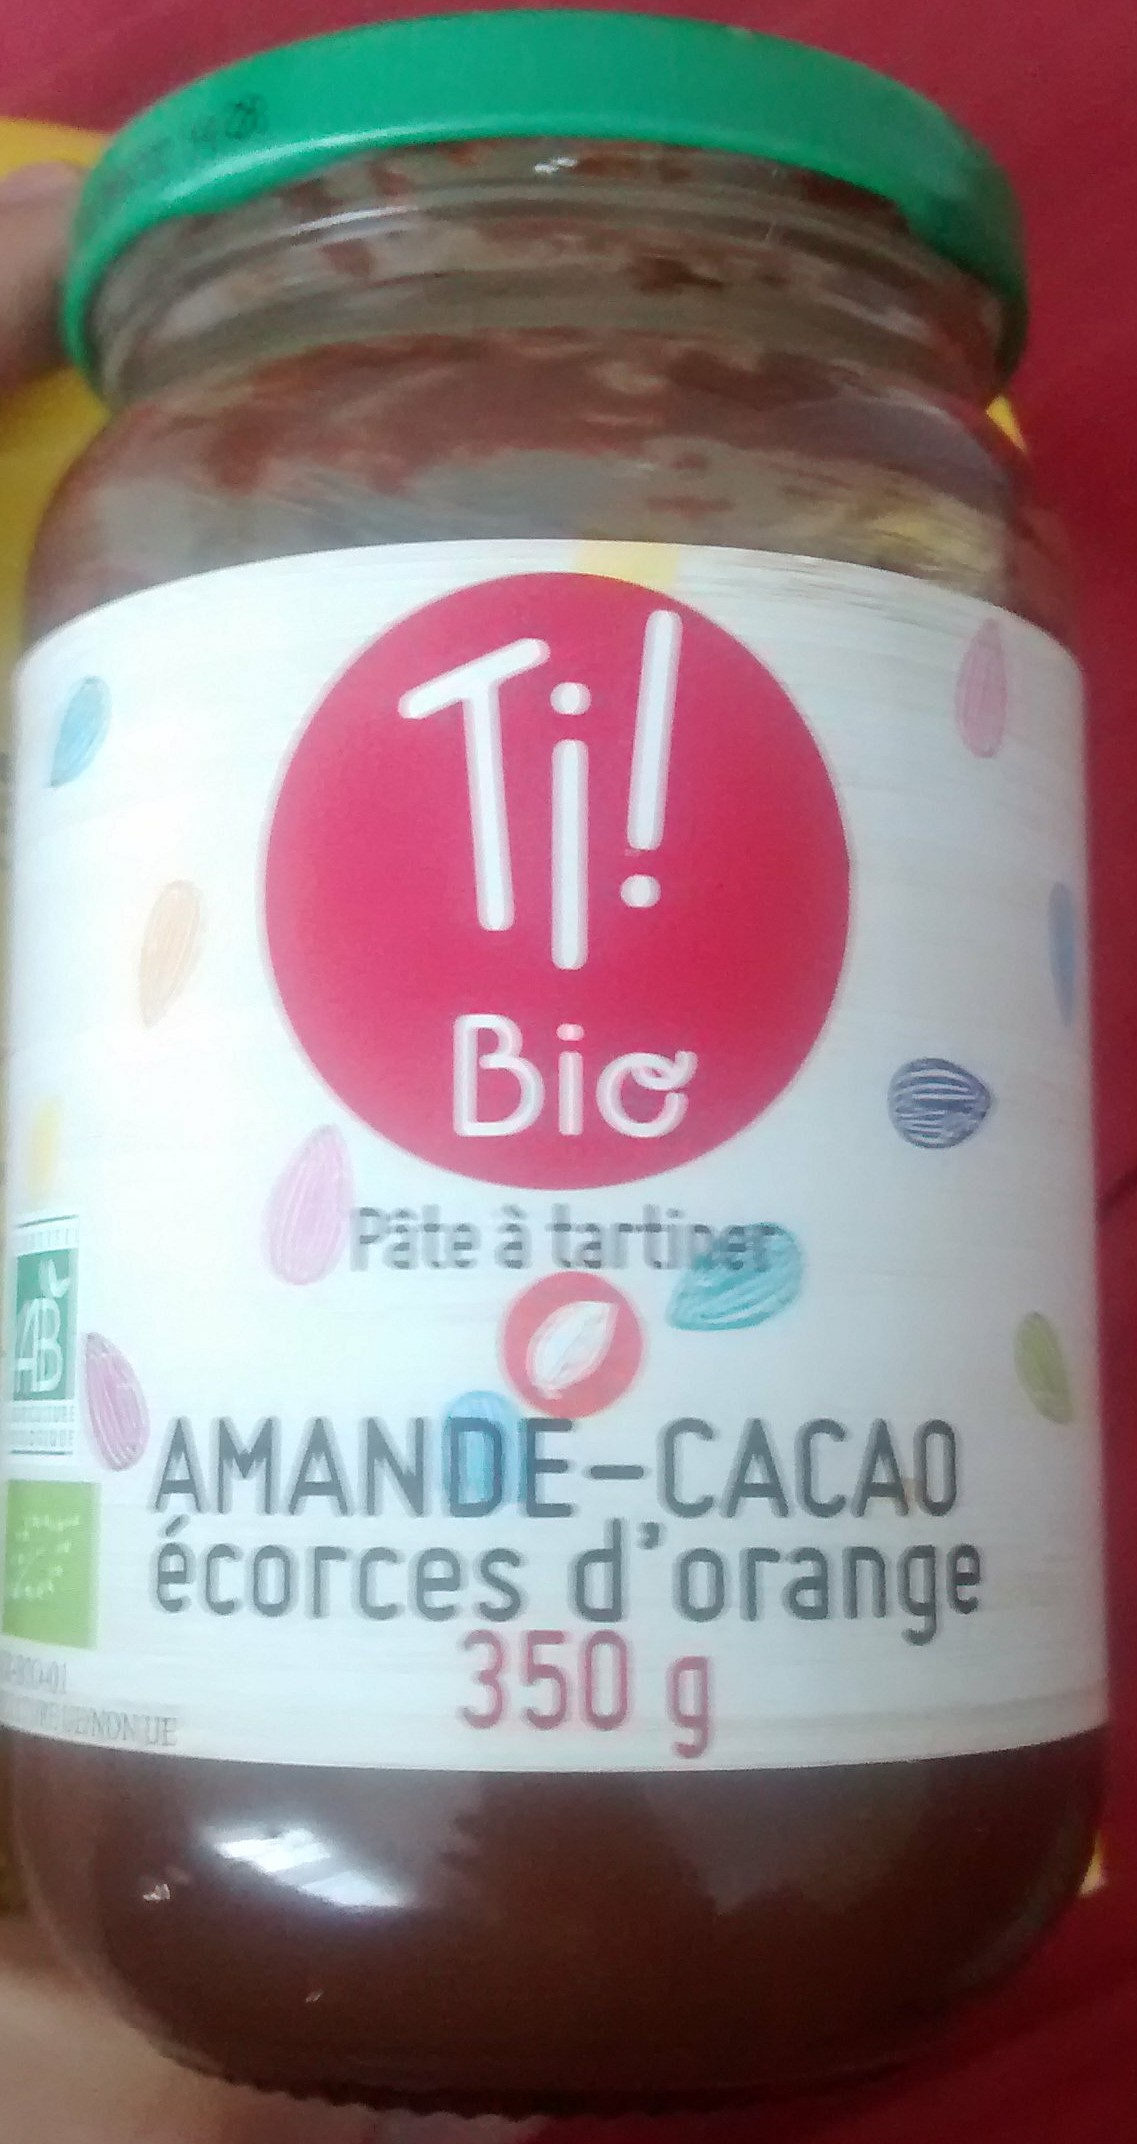 Pâte à tartiner amande-cacao écorces d'orange - Product - fr